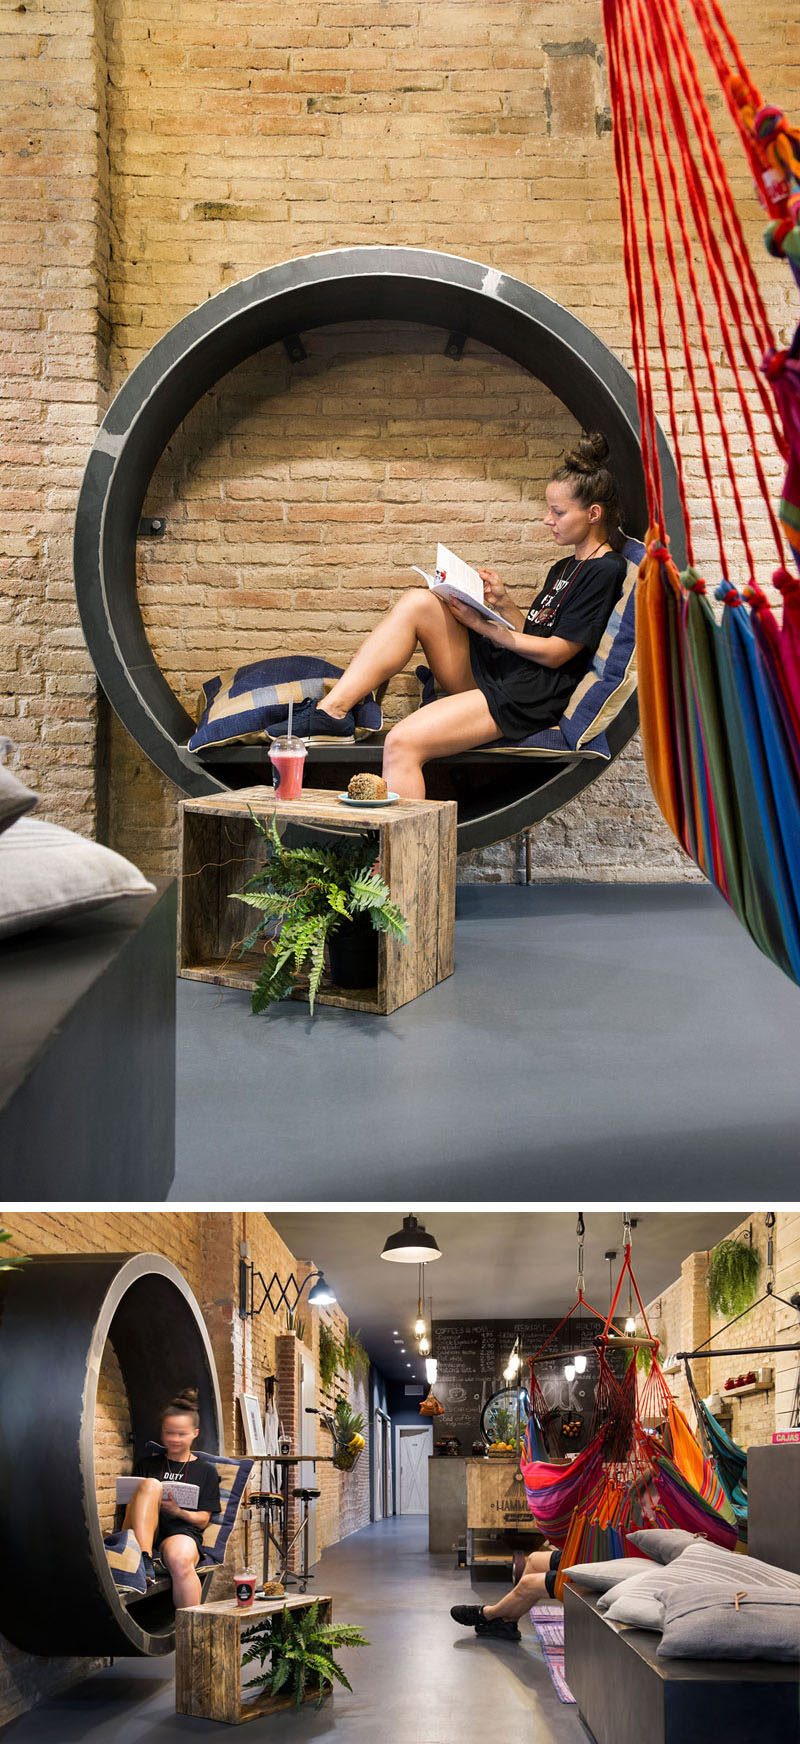 Этот круглый уголок для чтения с удобными подушками находится внутри фреш-бара в Барселоне.